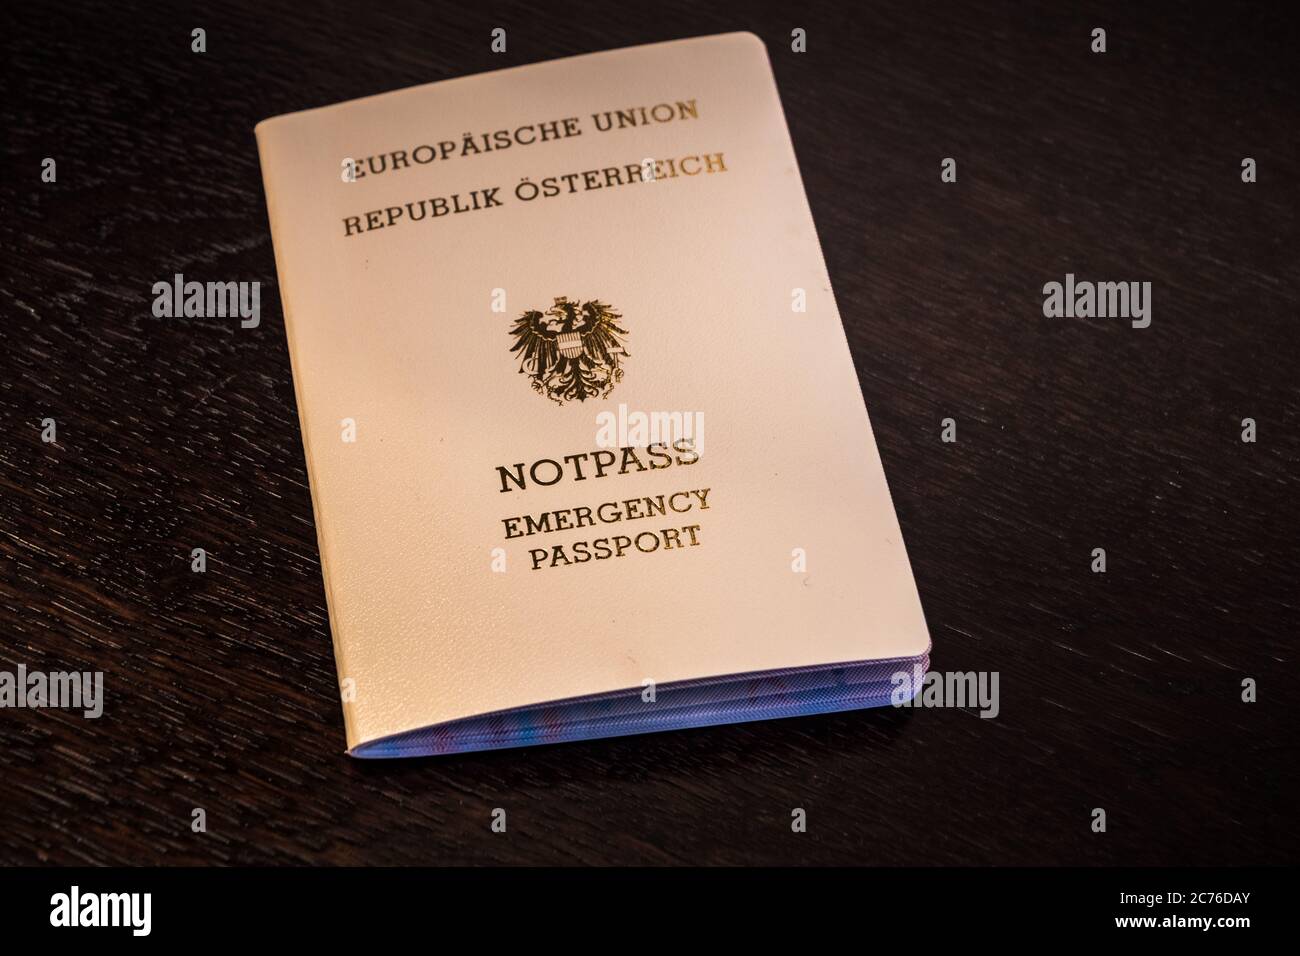 Passaporto europeo di emergenza della Repubblica d'Austria - documento di viaggio color crema dell'UE o dell'Unione europea Foto Stock